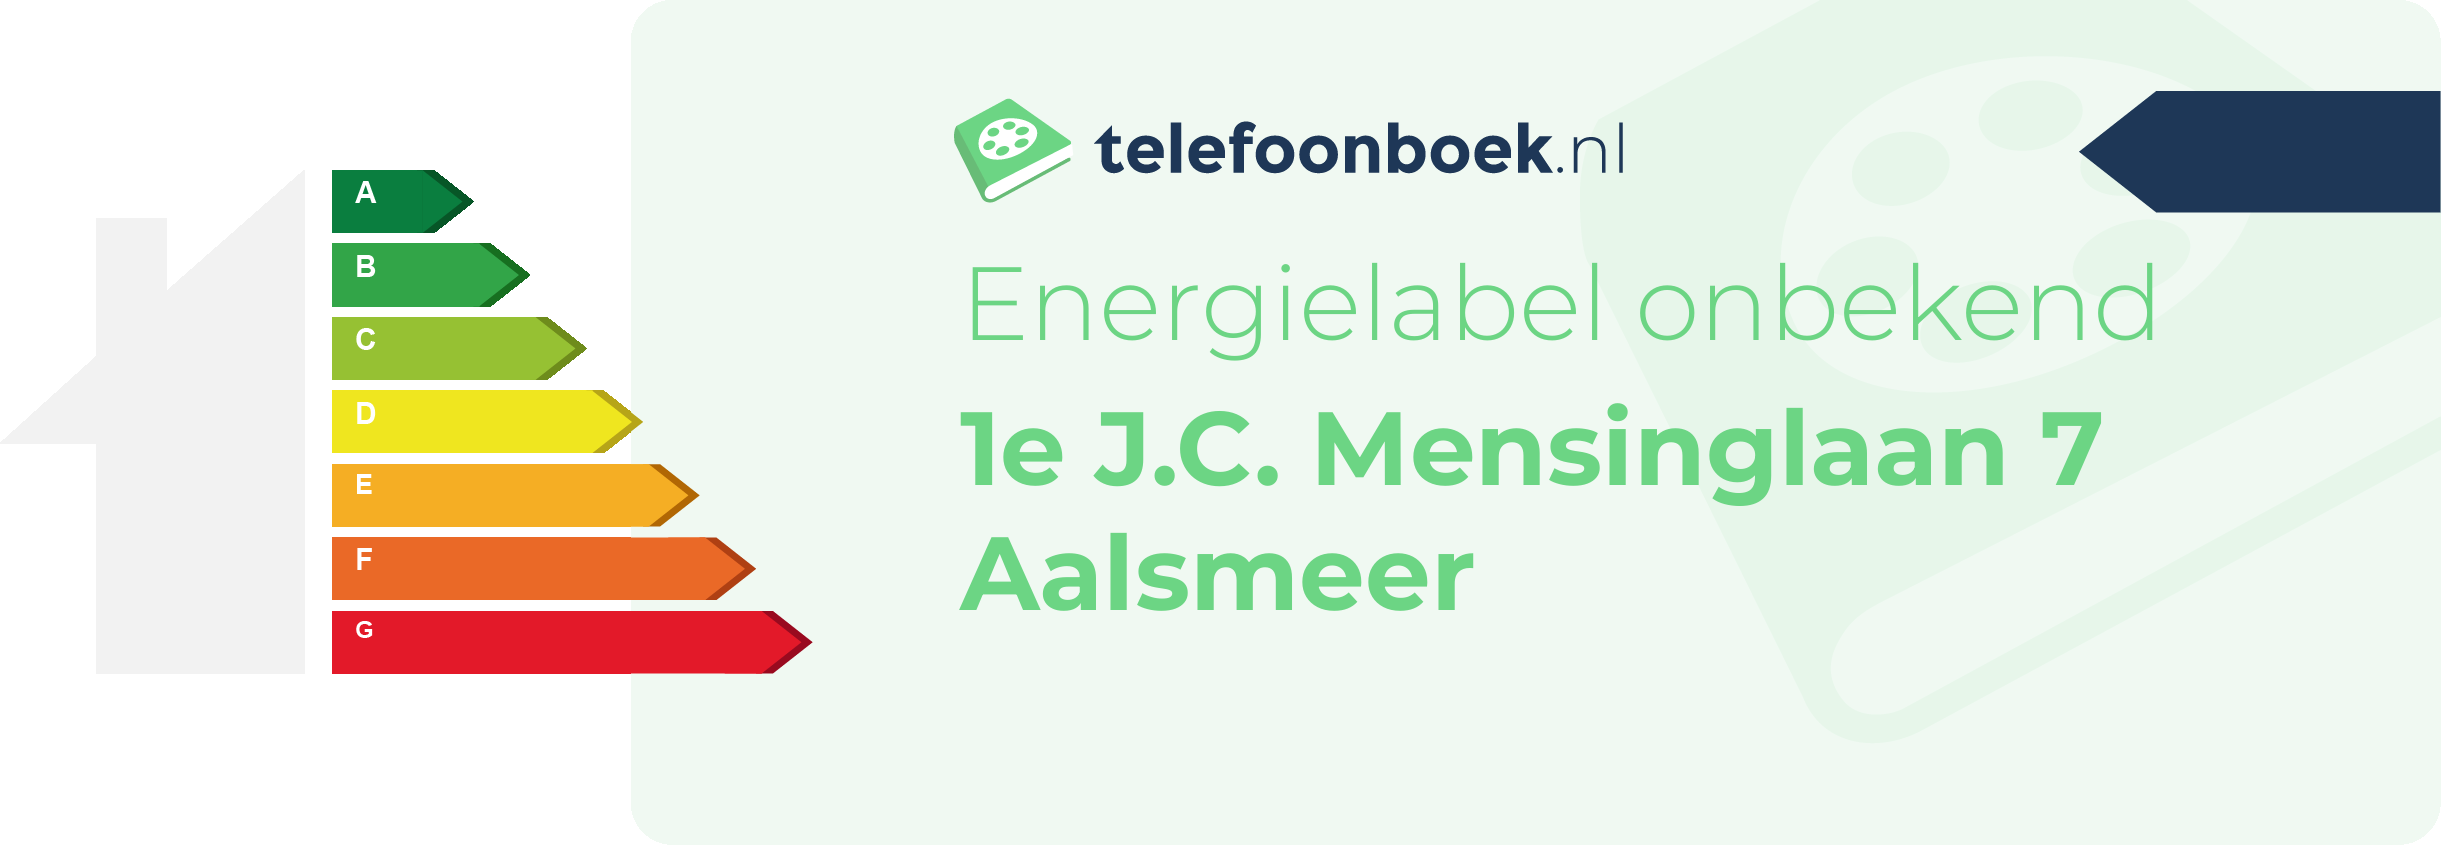 Energielabel 1e J.C. Mensinglaan 7 Aalsmeer